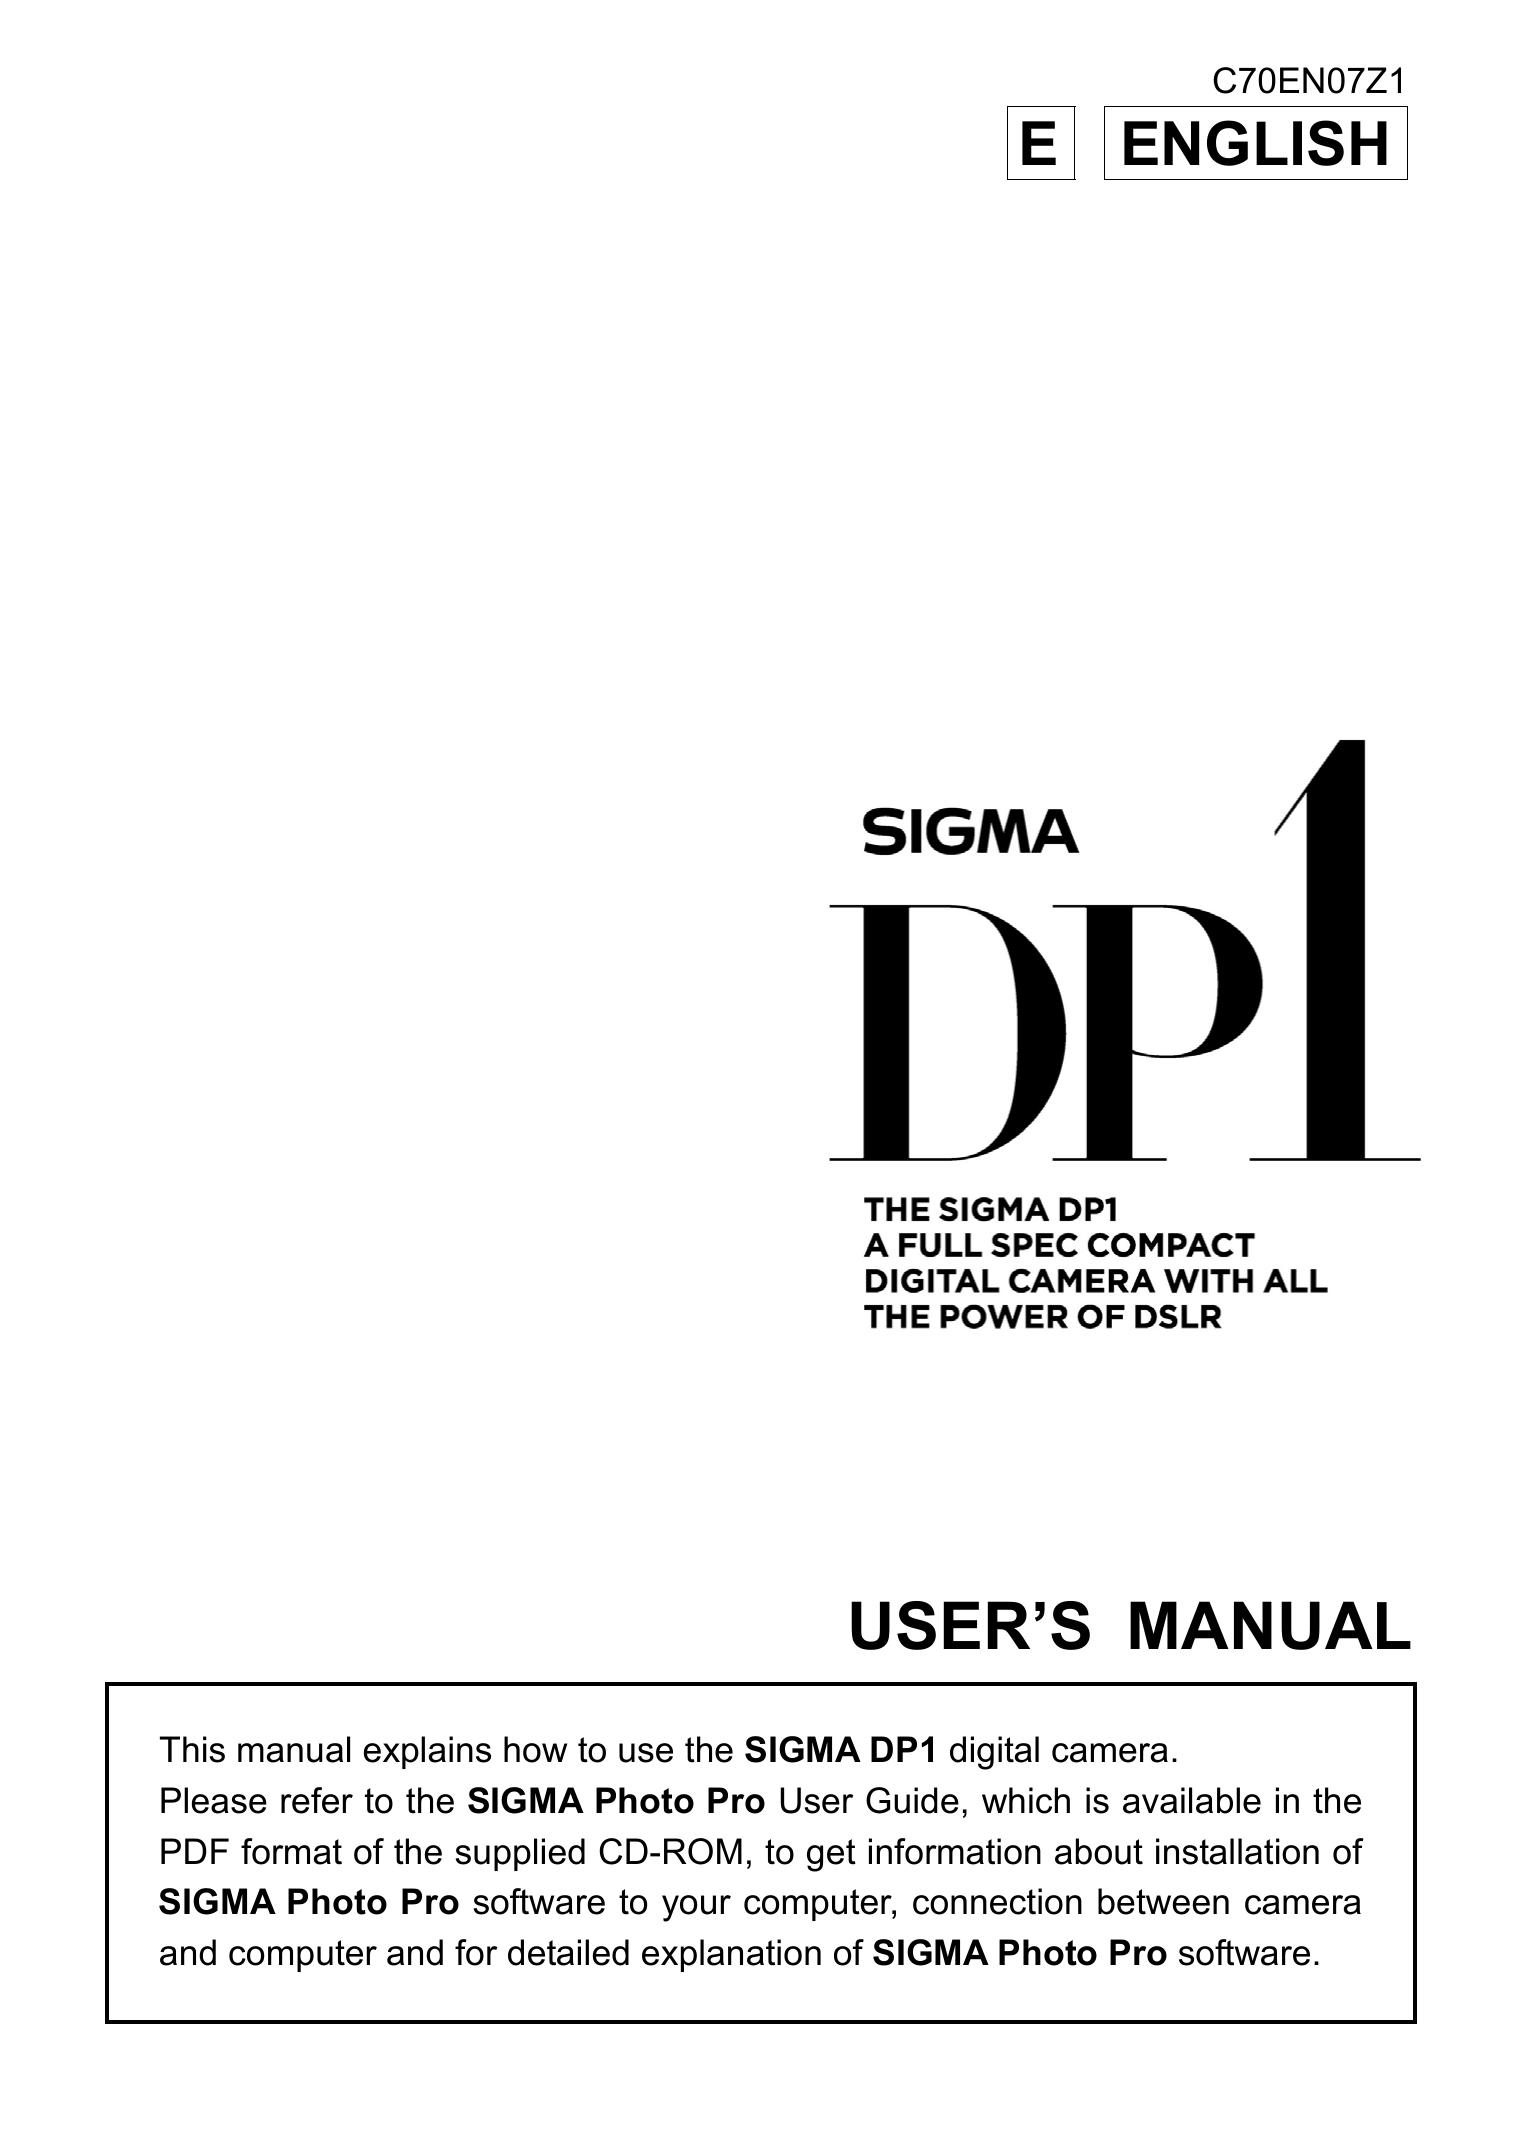 Sigma DP1 Digital Camera User Manual